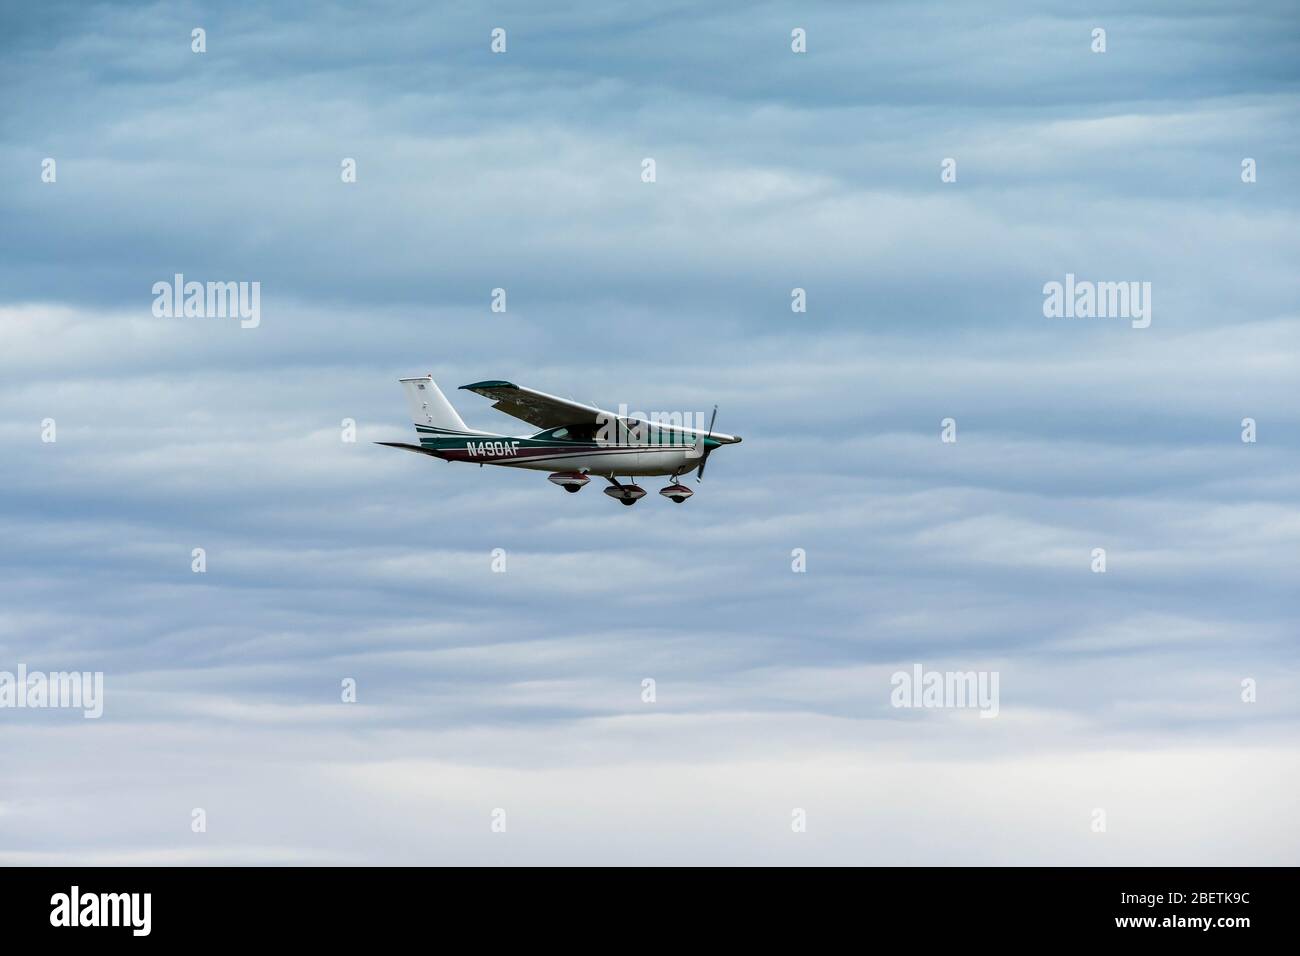 EVERETT, WAS, USA - JUNI 2018: Cessna 177 Cardinal Fixwing Light Aircraft kommt an Land bei Everett. Stockfoto